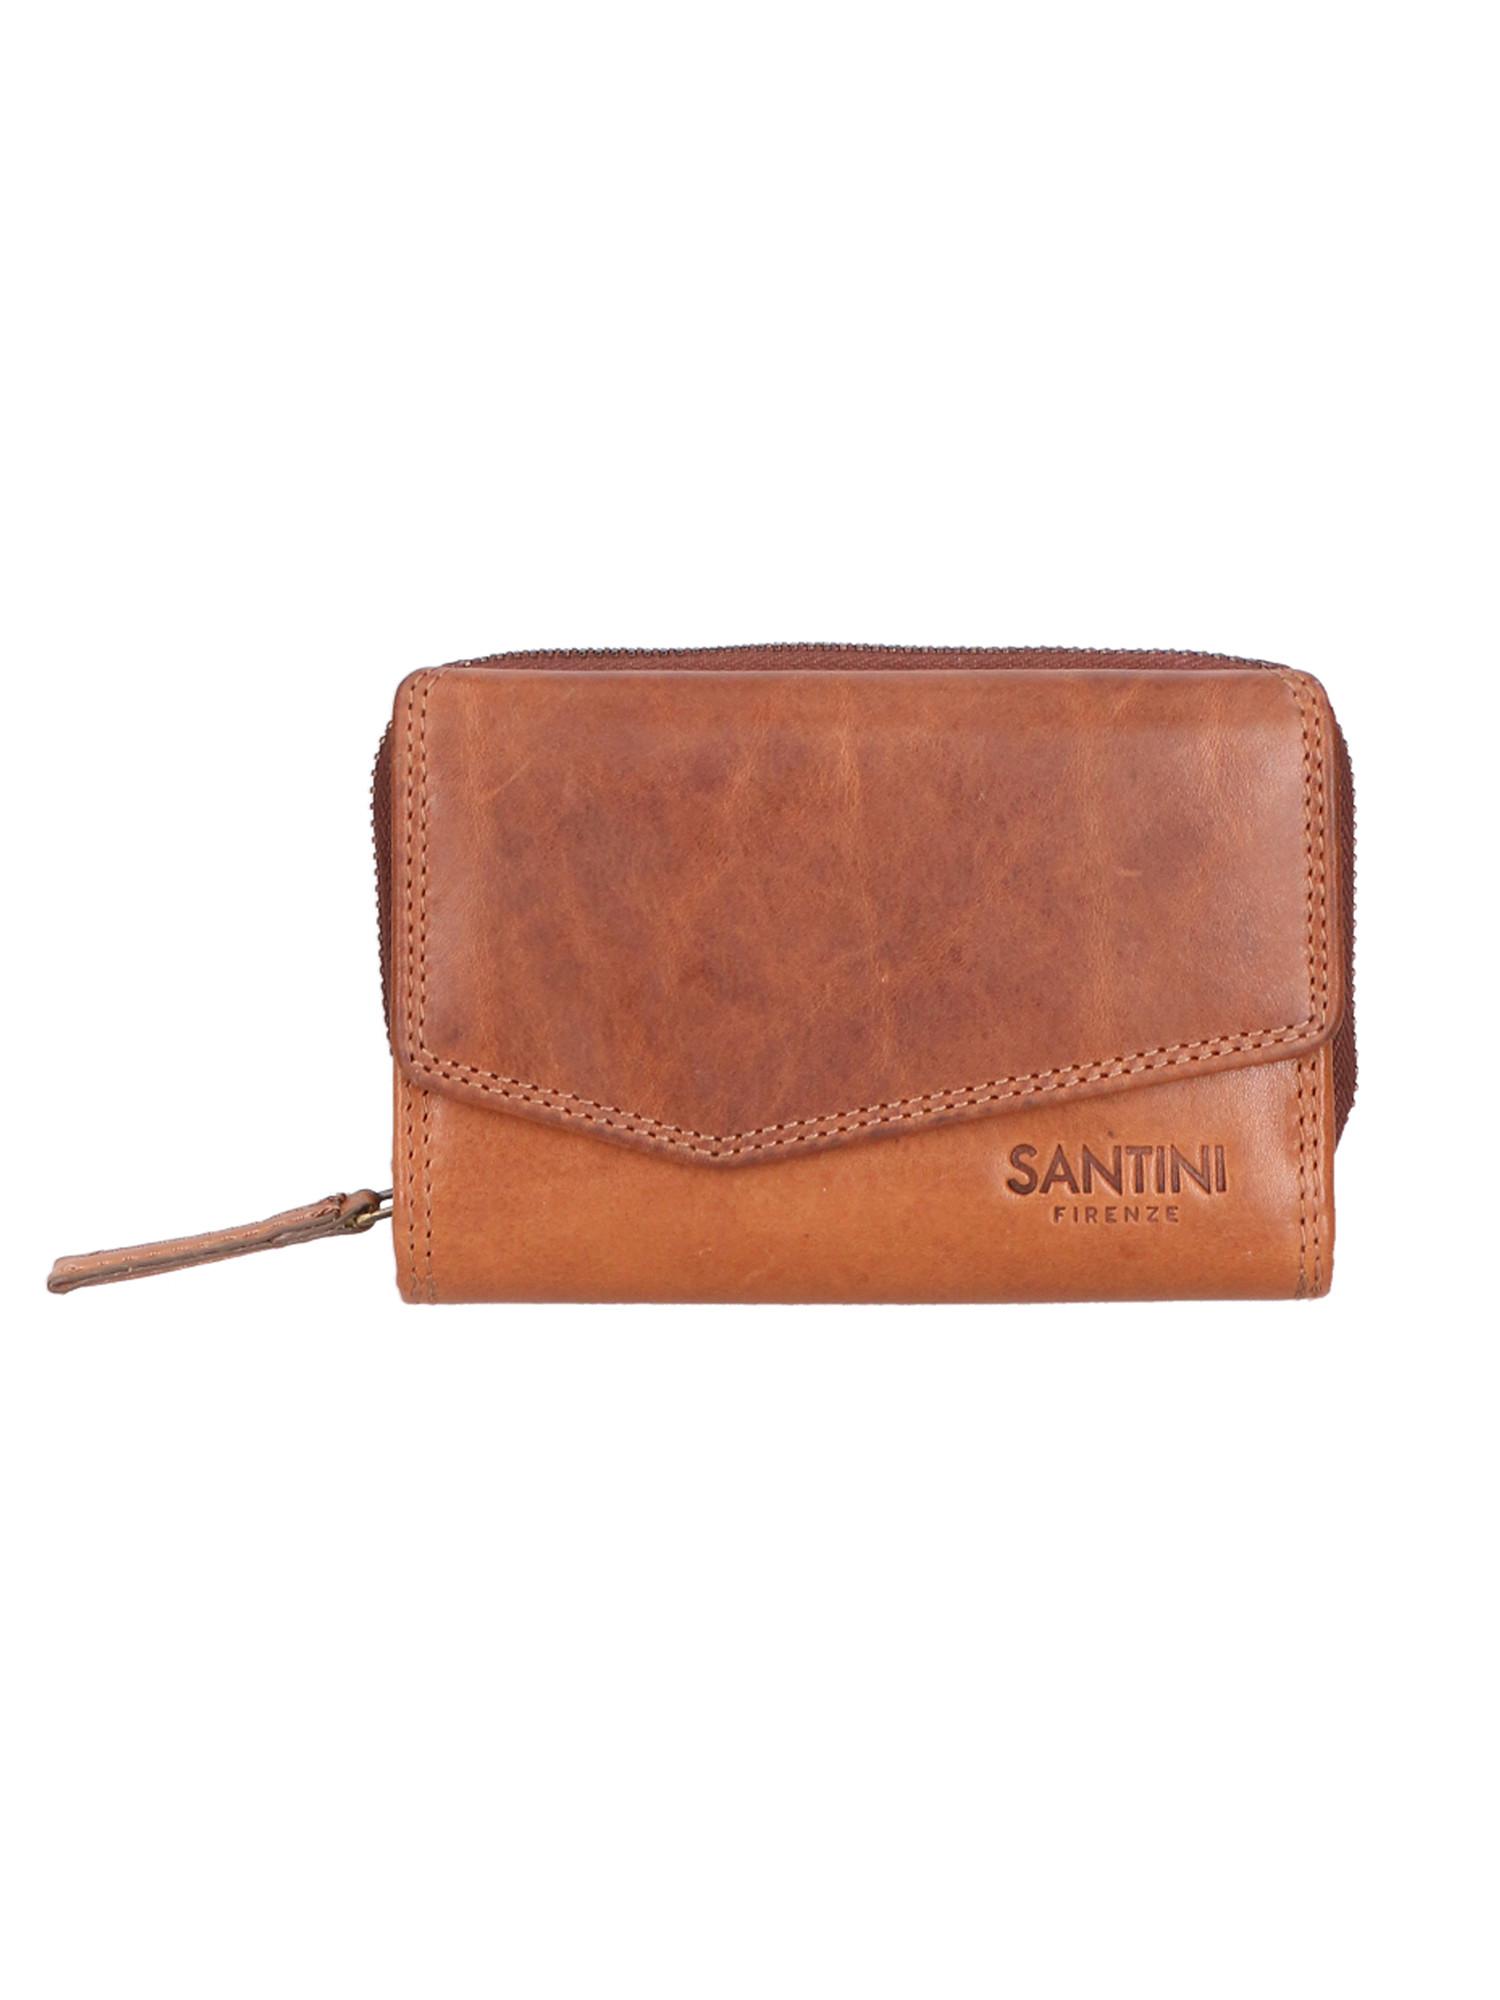 Santini  portefeuille 